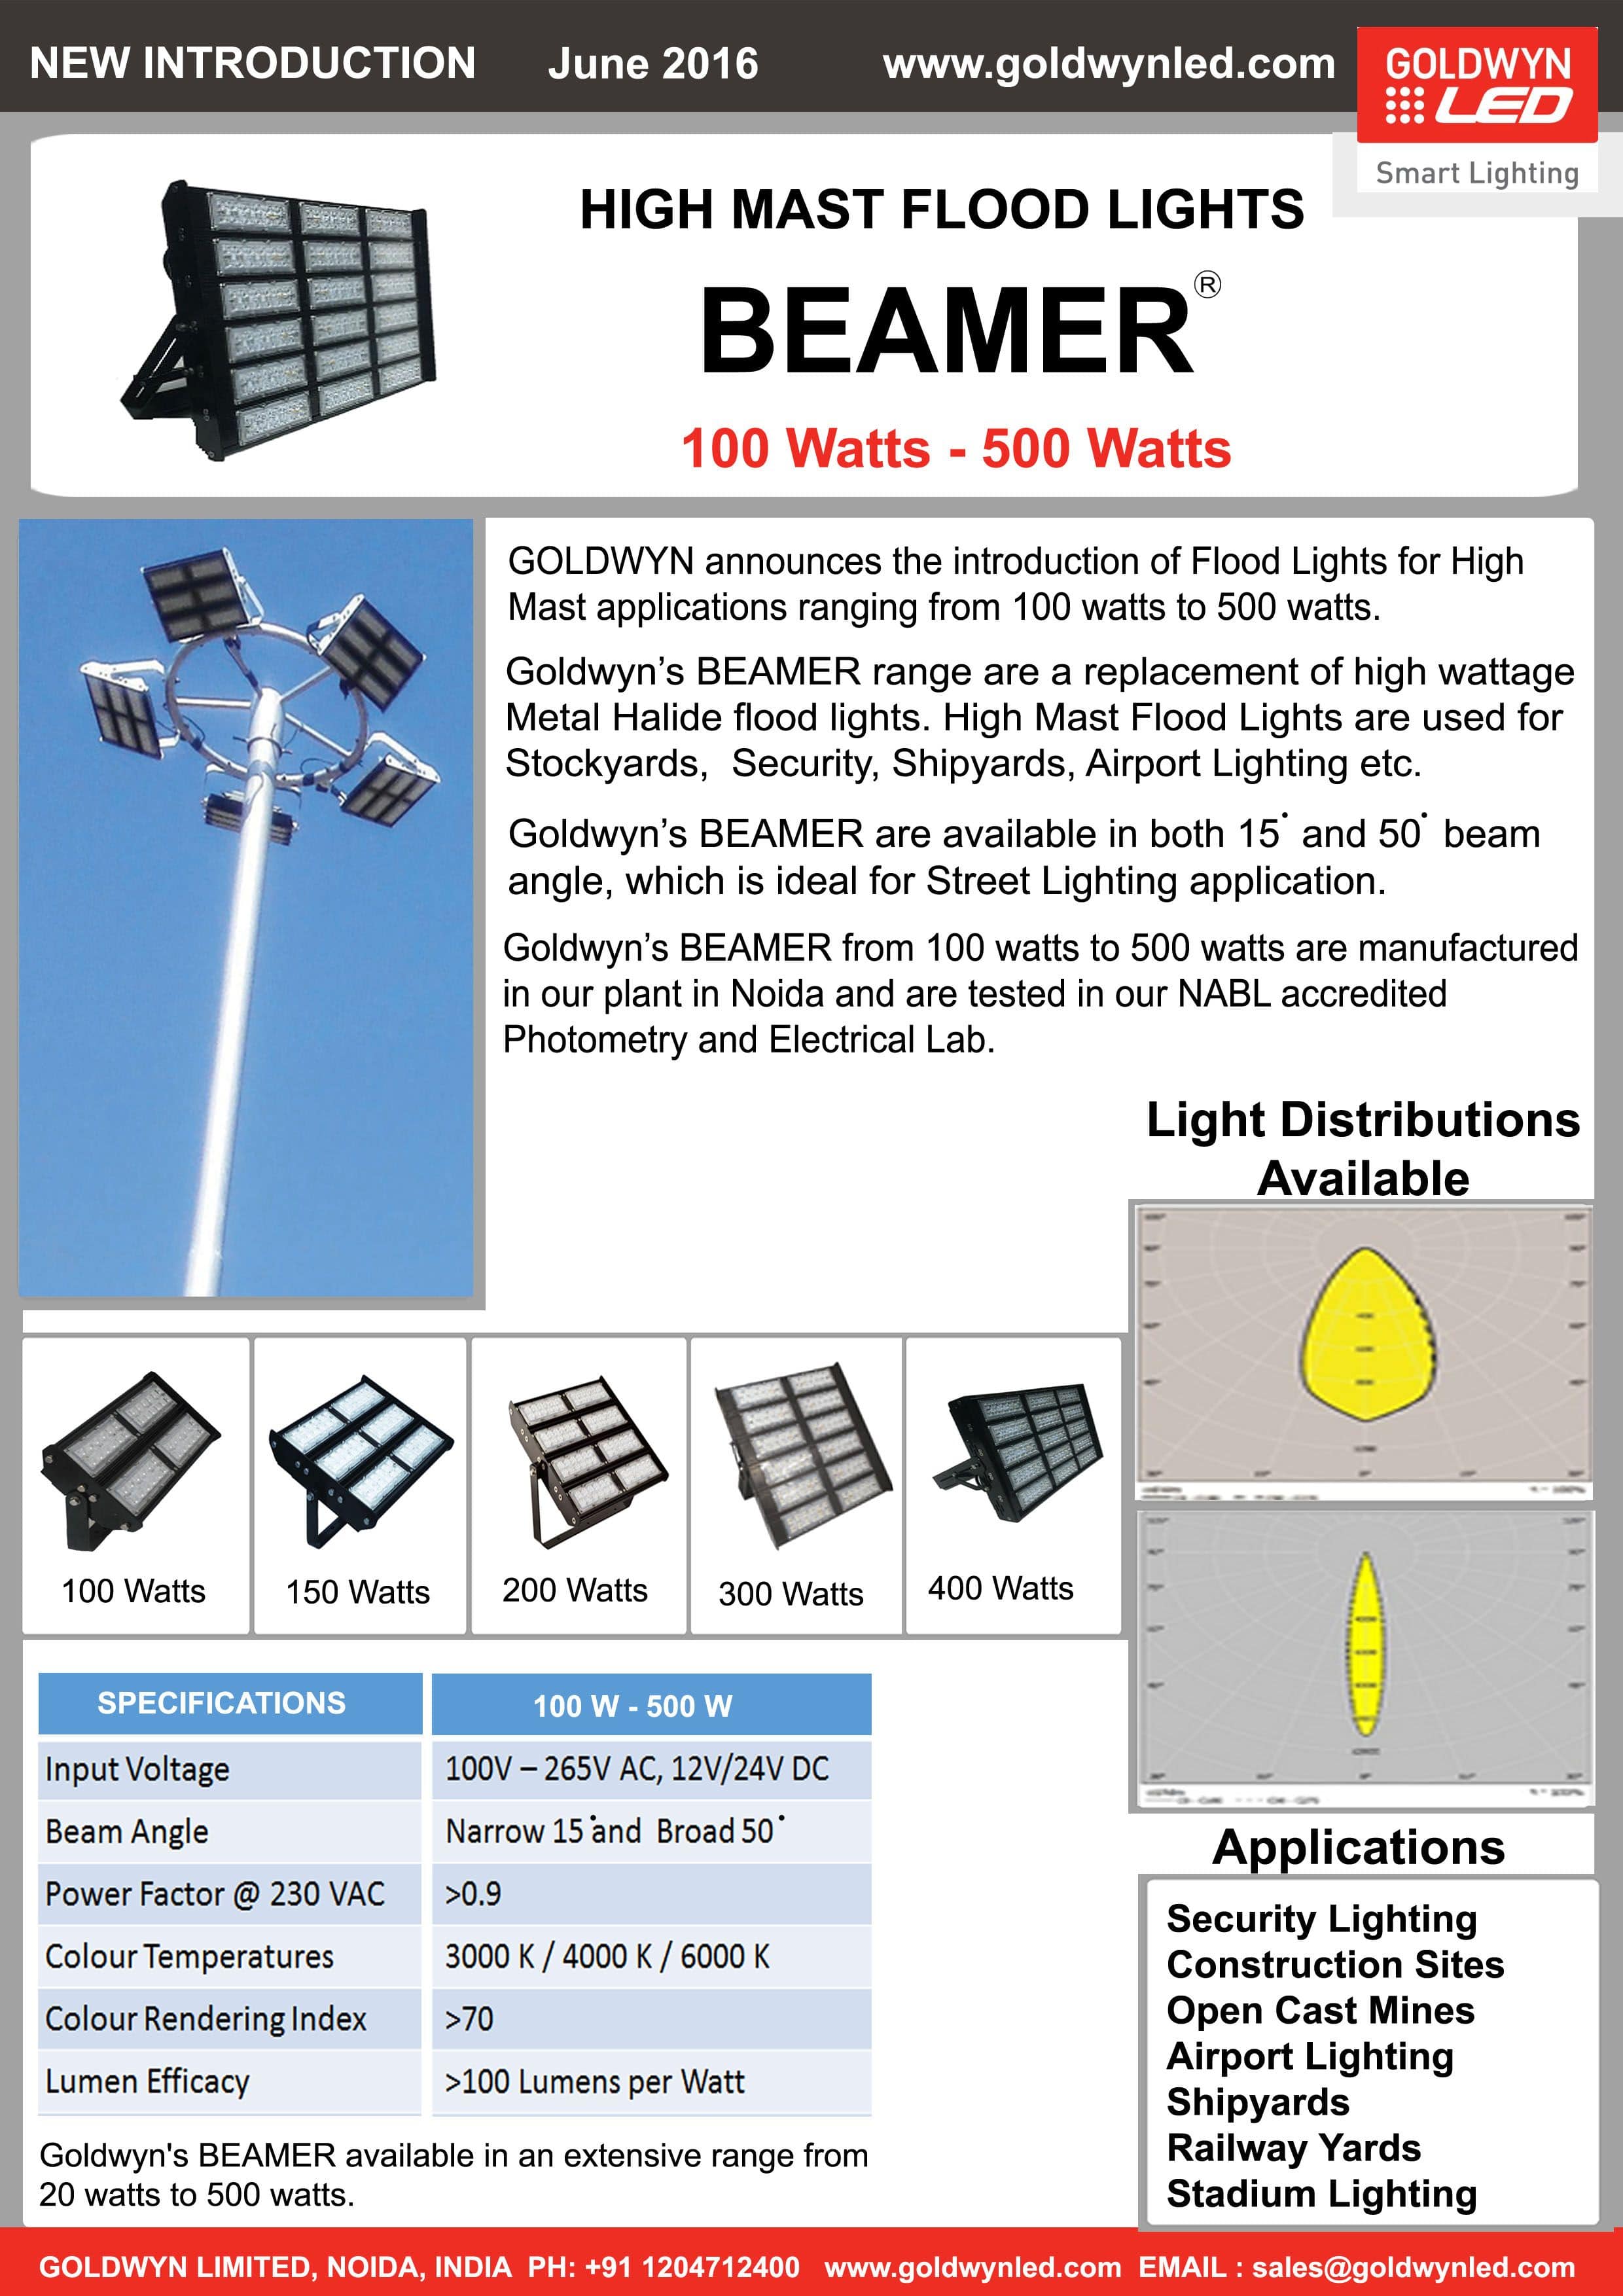 BEAMER 100 Watts - 500 Watts